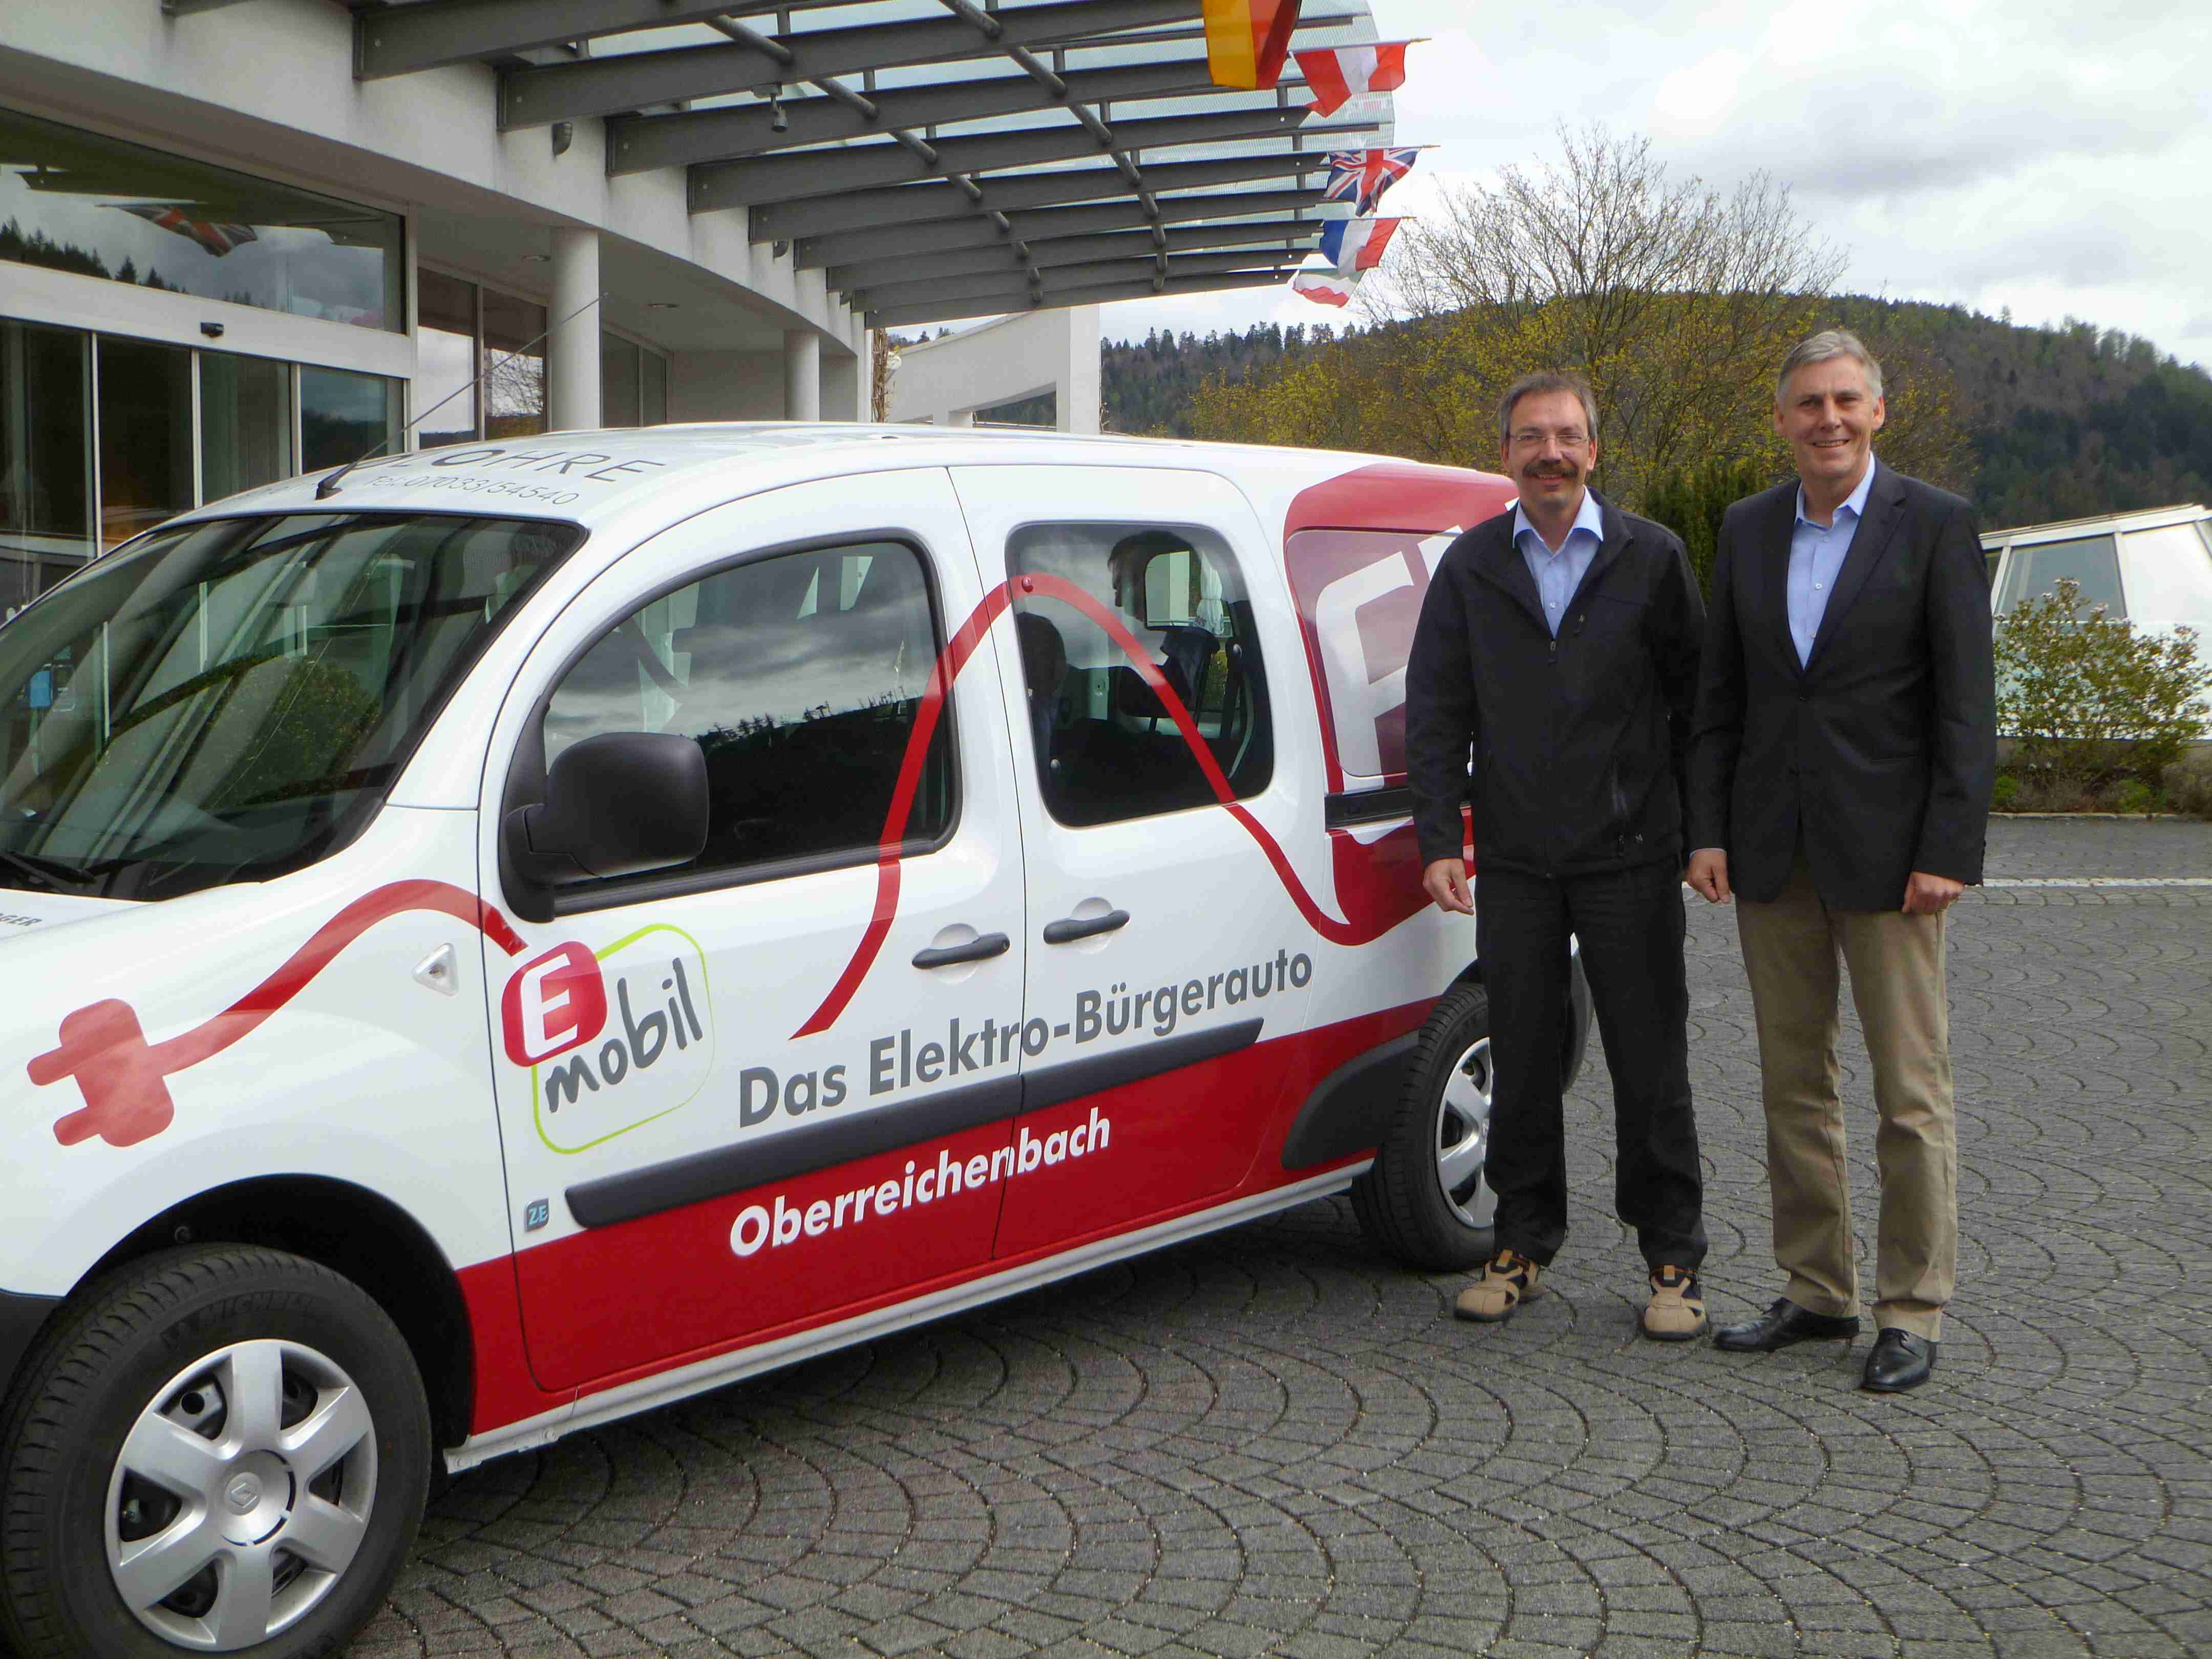 Das Elektro-Bürgerauto Oberreichenbach wird von zwei Mitarbeitern präsentiert